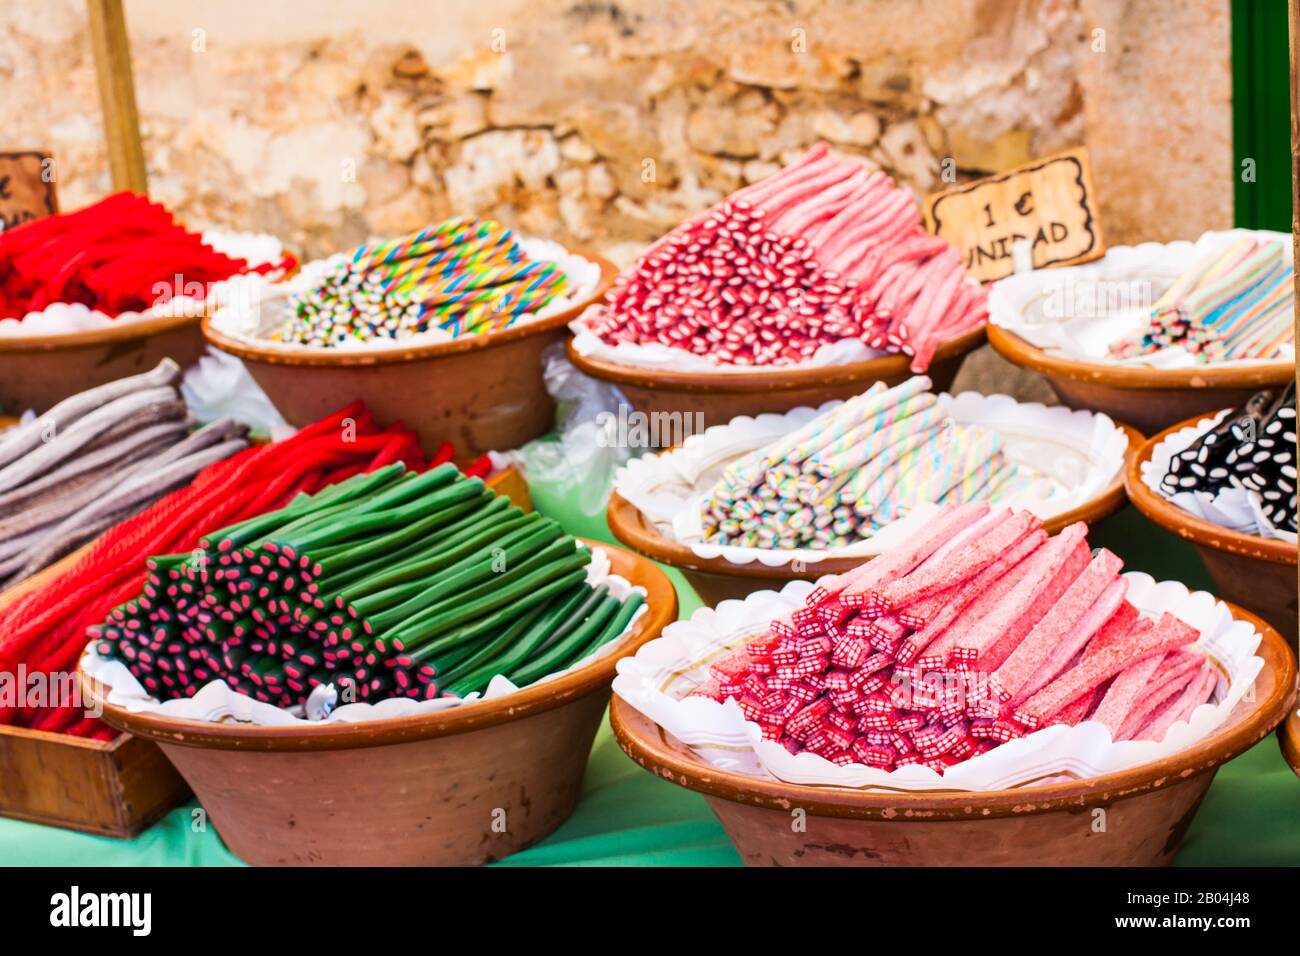 Colorful liquorice sweets for sale on Porreres Market. Regaliz, 3€/unidad (Liquorice, €3/unit). 1€/unidad (€1/unit). Porreres, Majorca, Spain Stock Photo